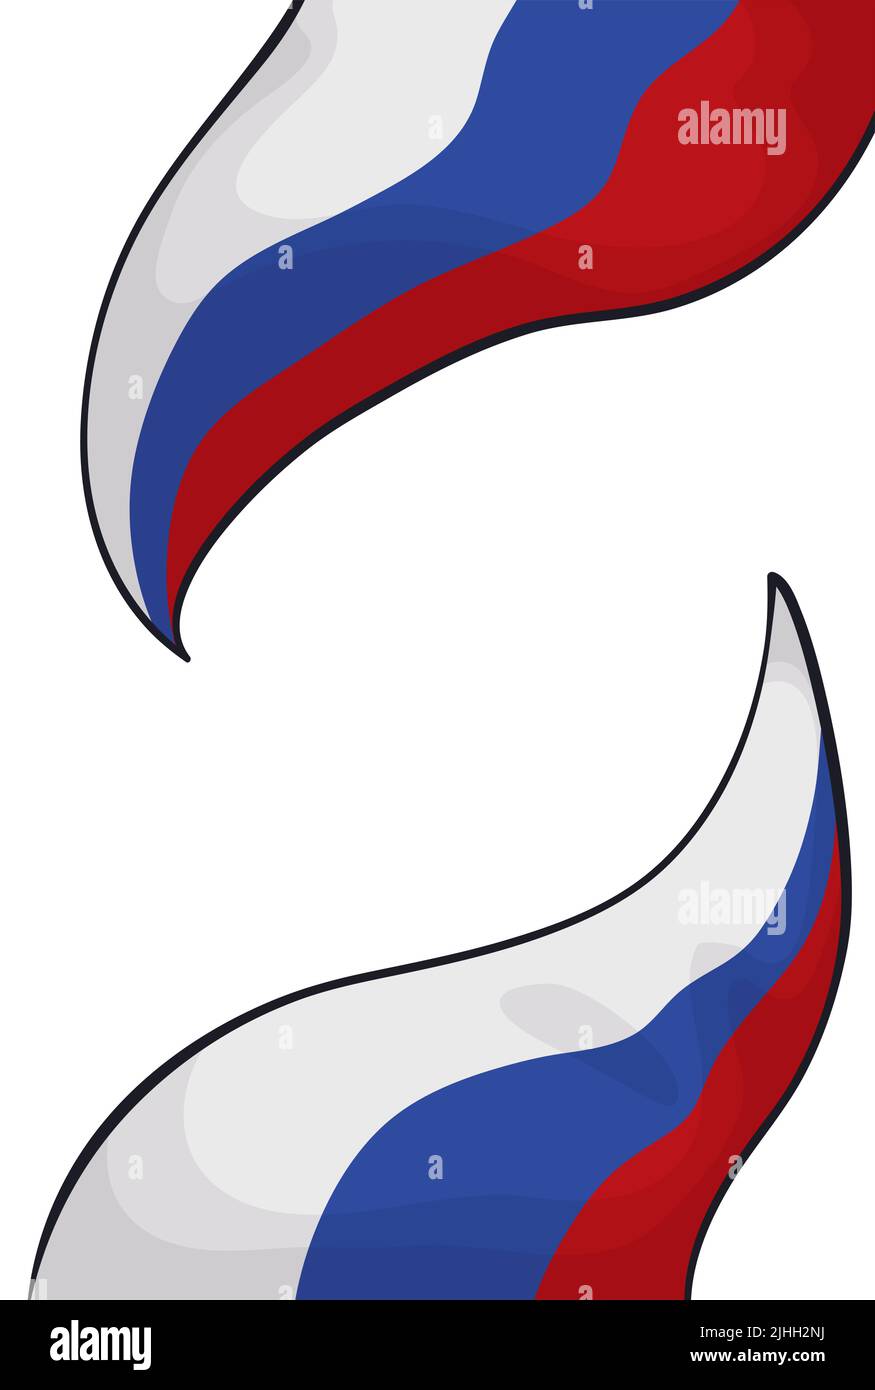 Paar winkende Tricolor-Wimpel mit den charakteristischen Russland-Flaggen-Farben: Weiß, blau und rot. Design im Cartoon-Stil auf weißem Hintergrund. Stock Vektor